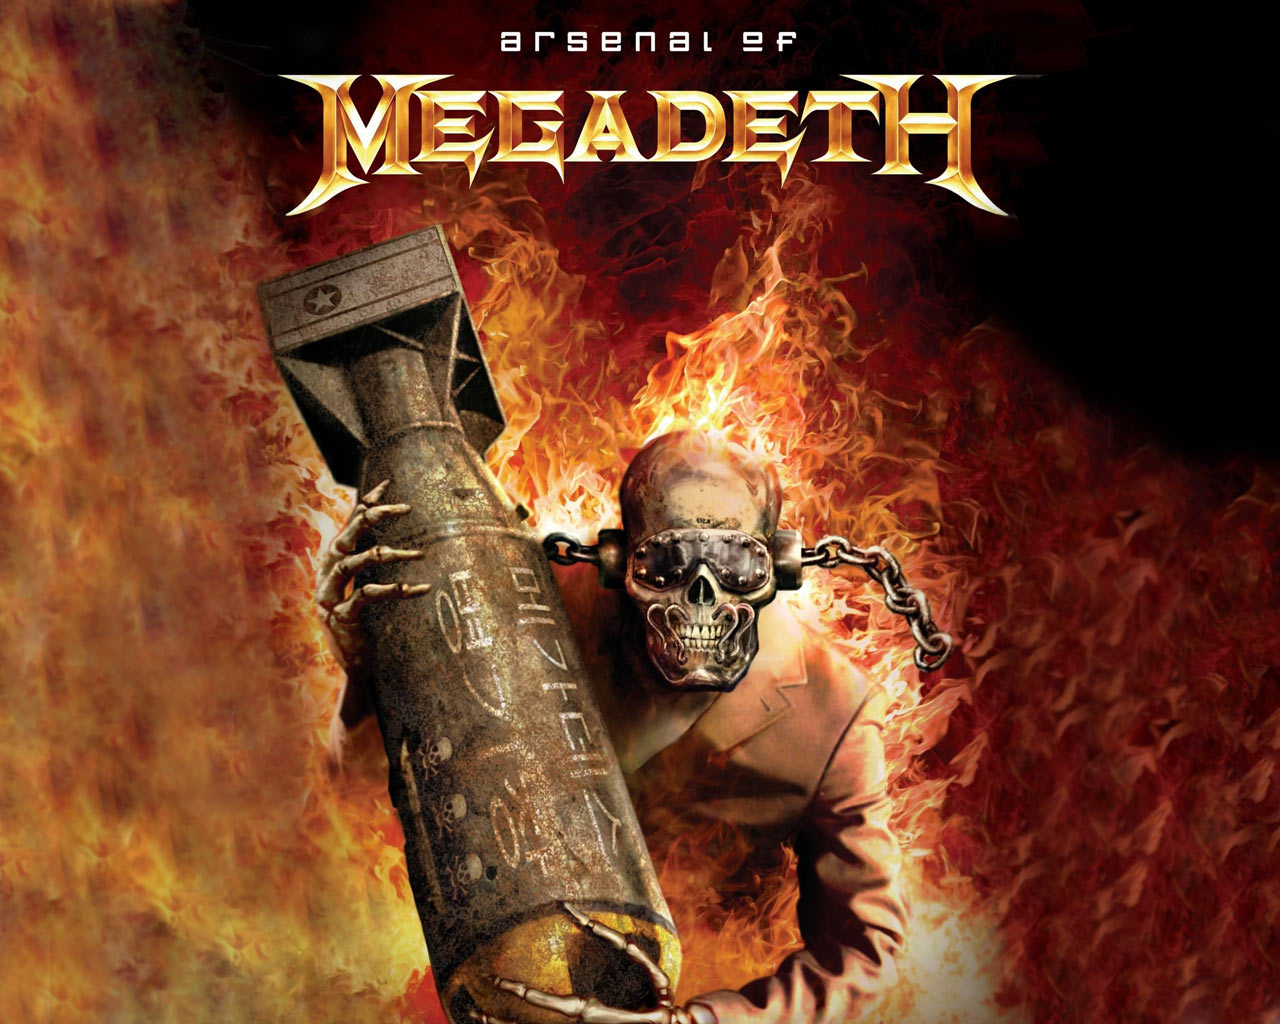 Megadeth Wallpaper